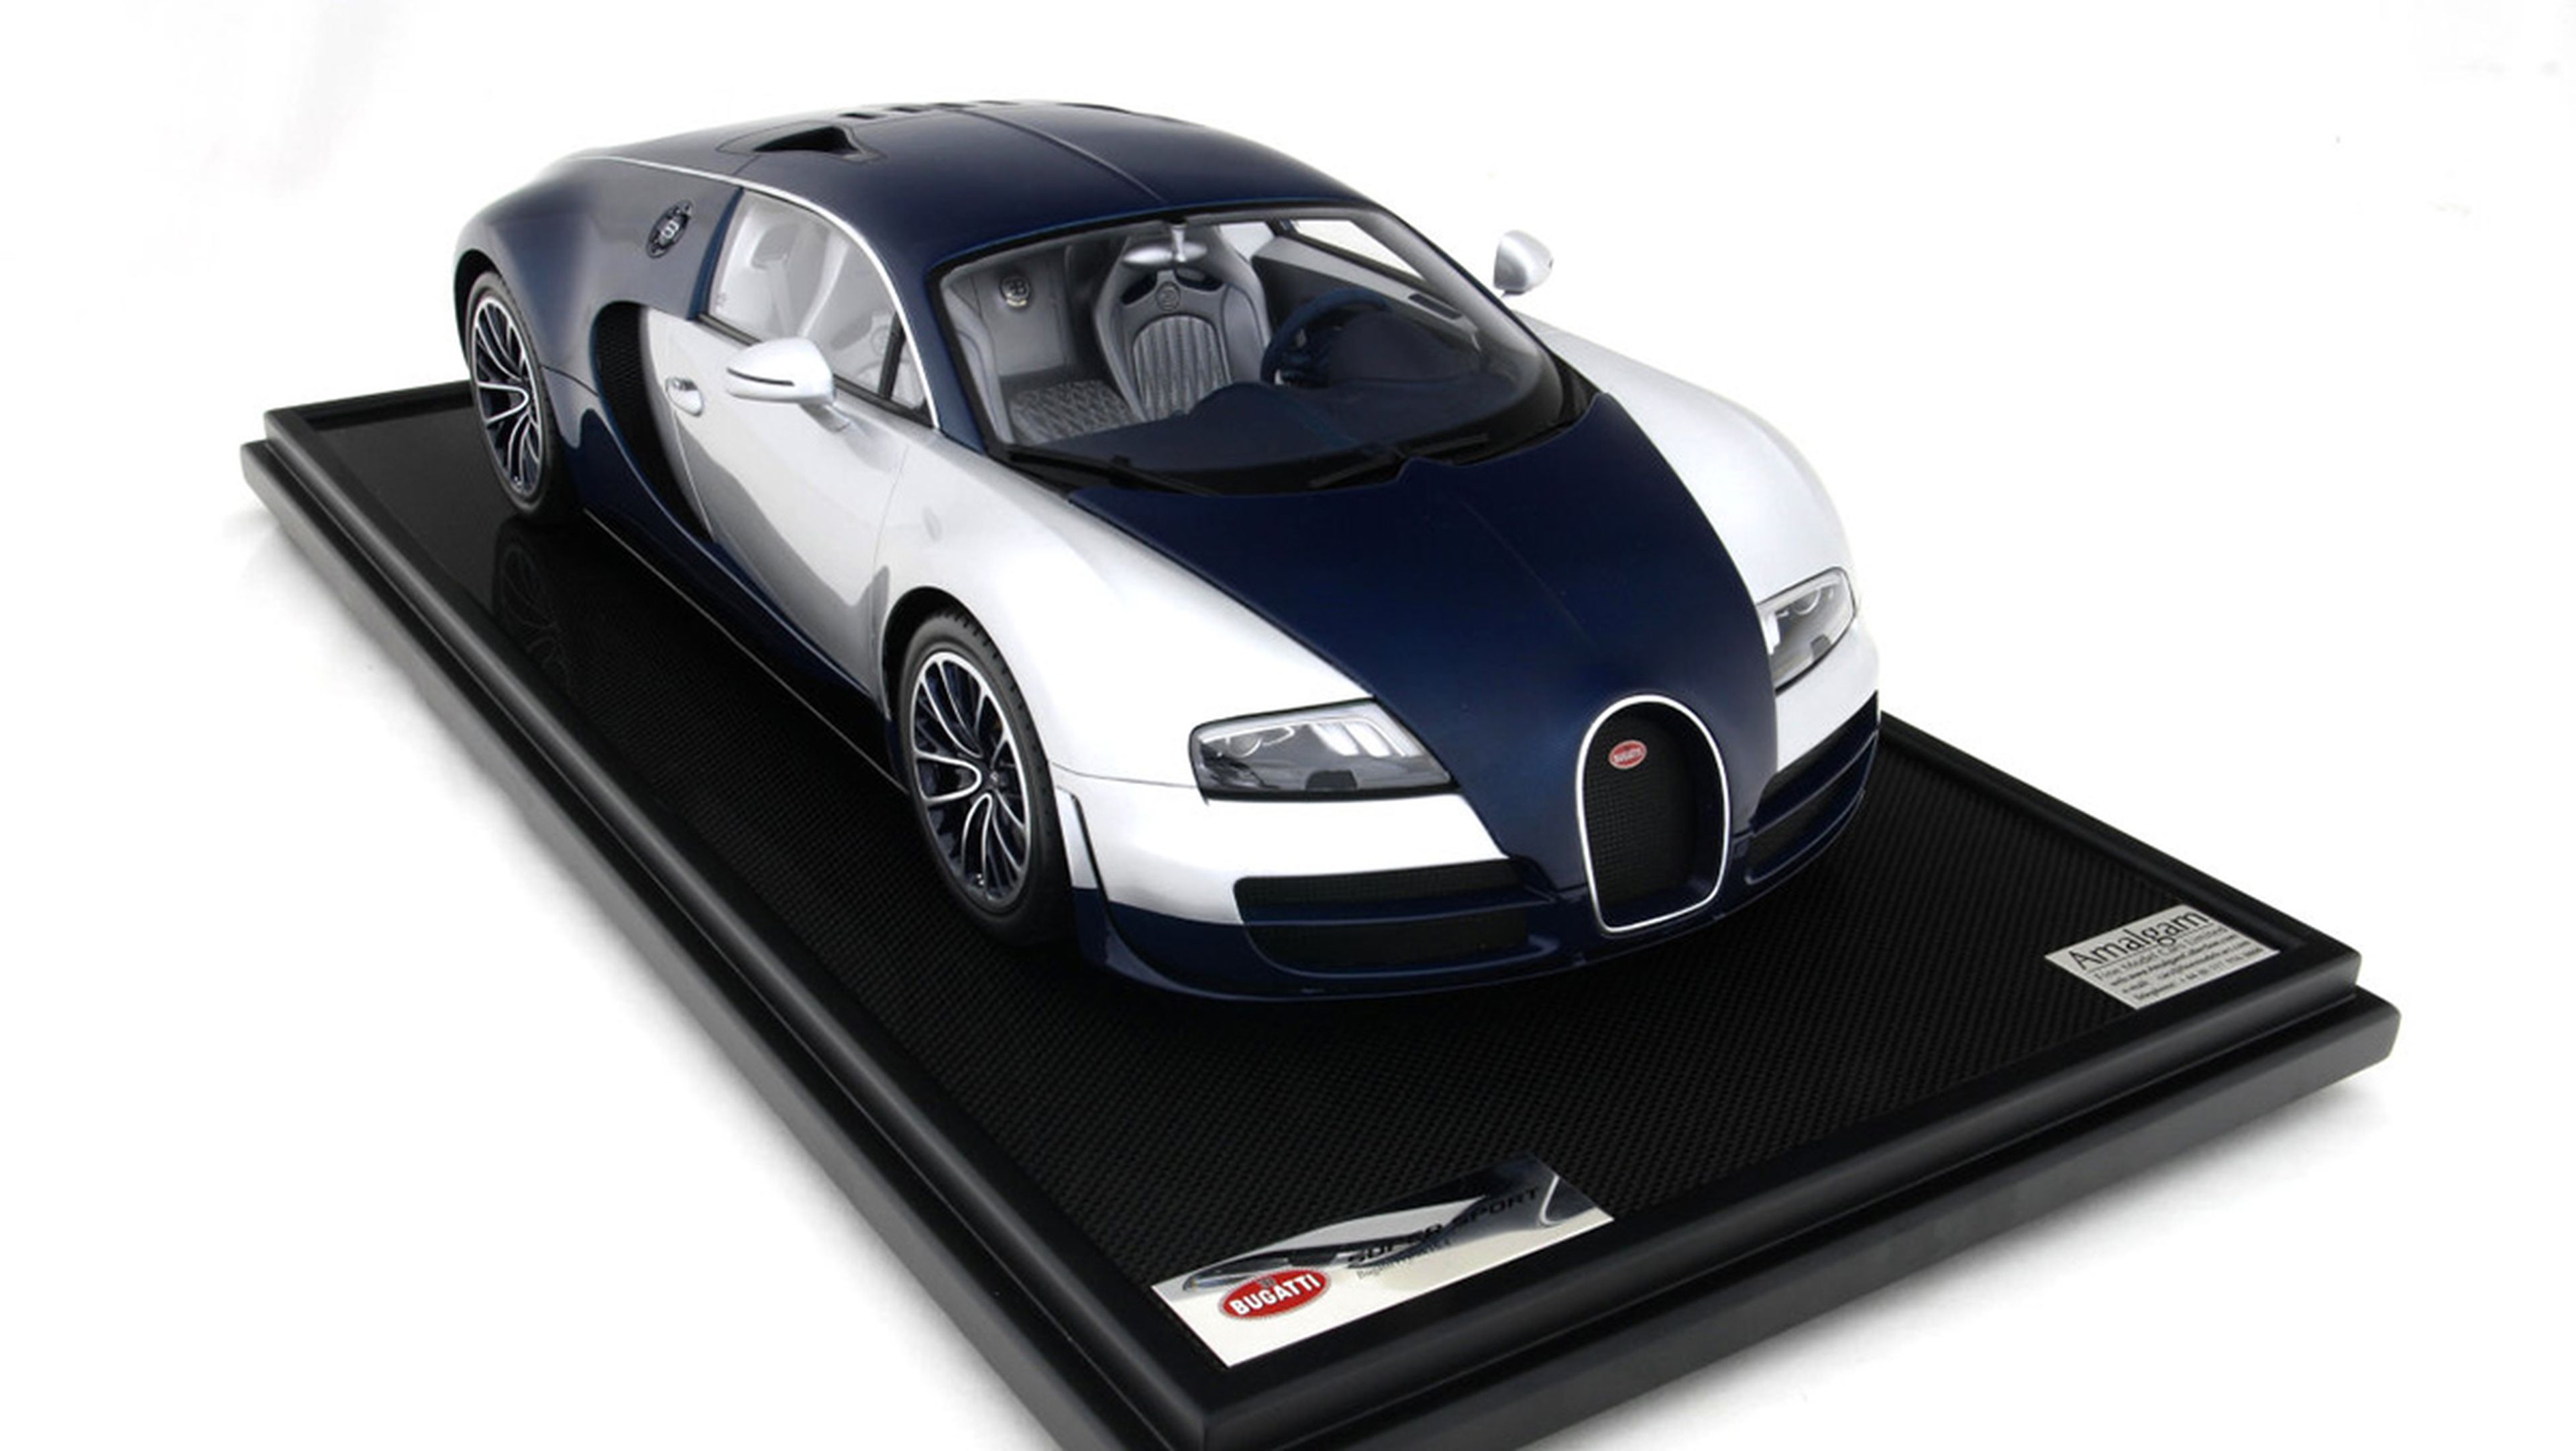 La maqueta del Bugatti Veyron de Amalgam